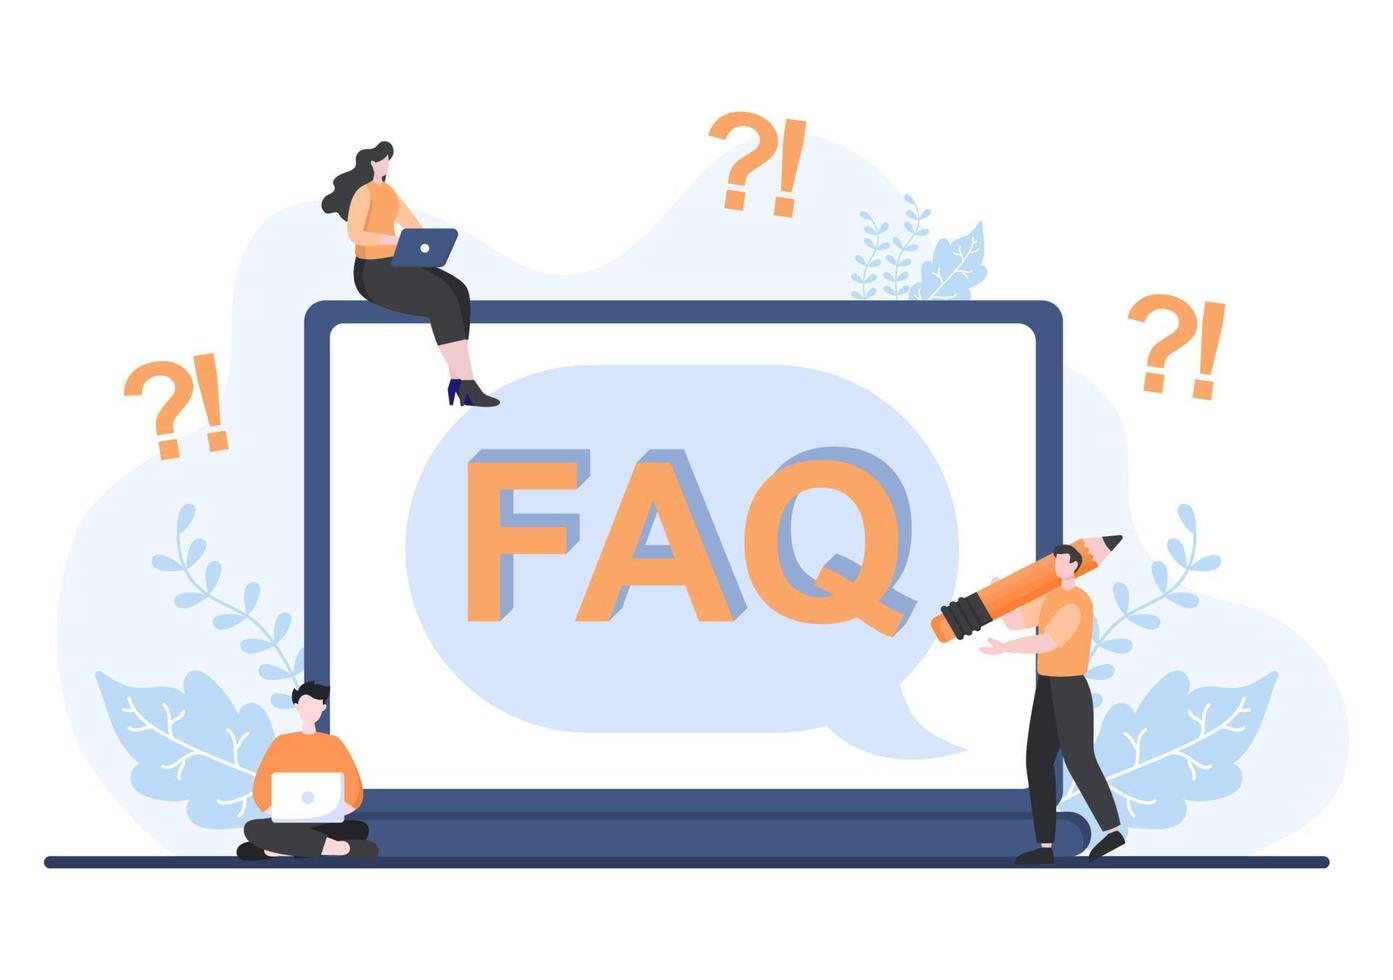 faq o domande frequenti per sito web, helpdesk blogger, assistenza clienti, informazioni utili, guide. illustrazione vettoriale di sfondo